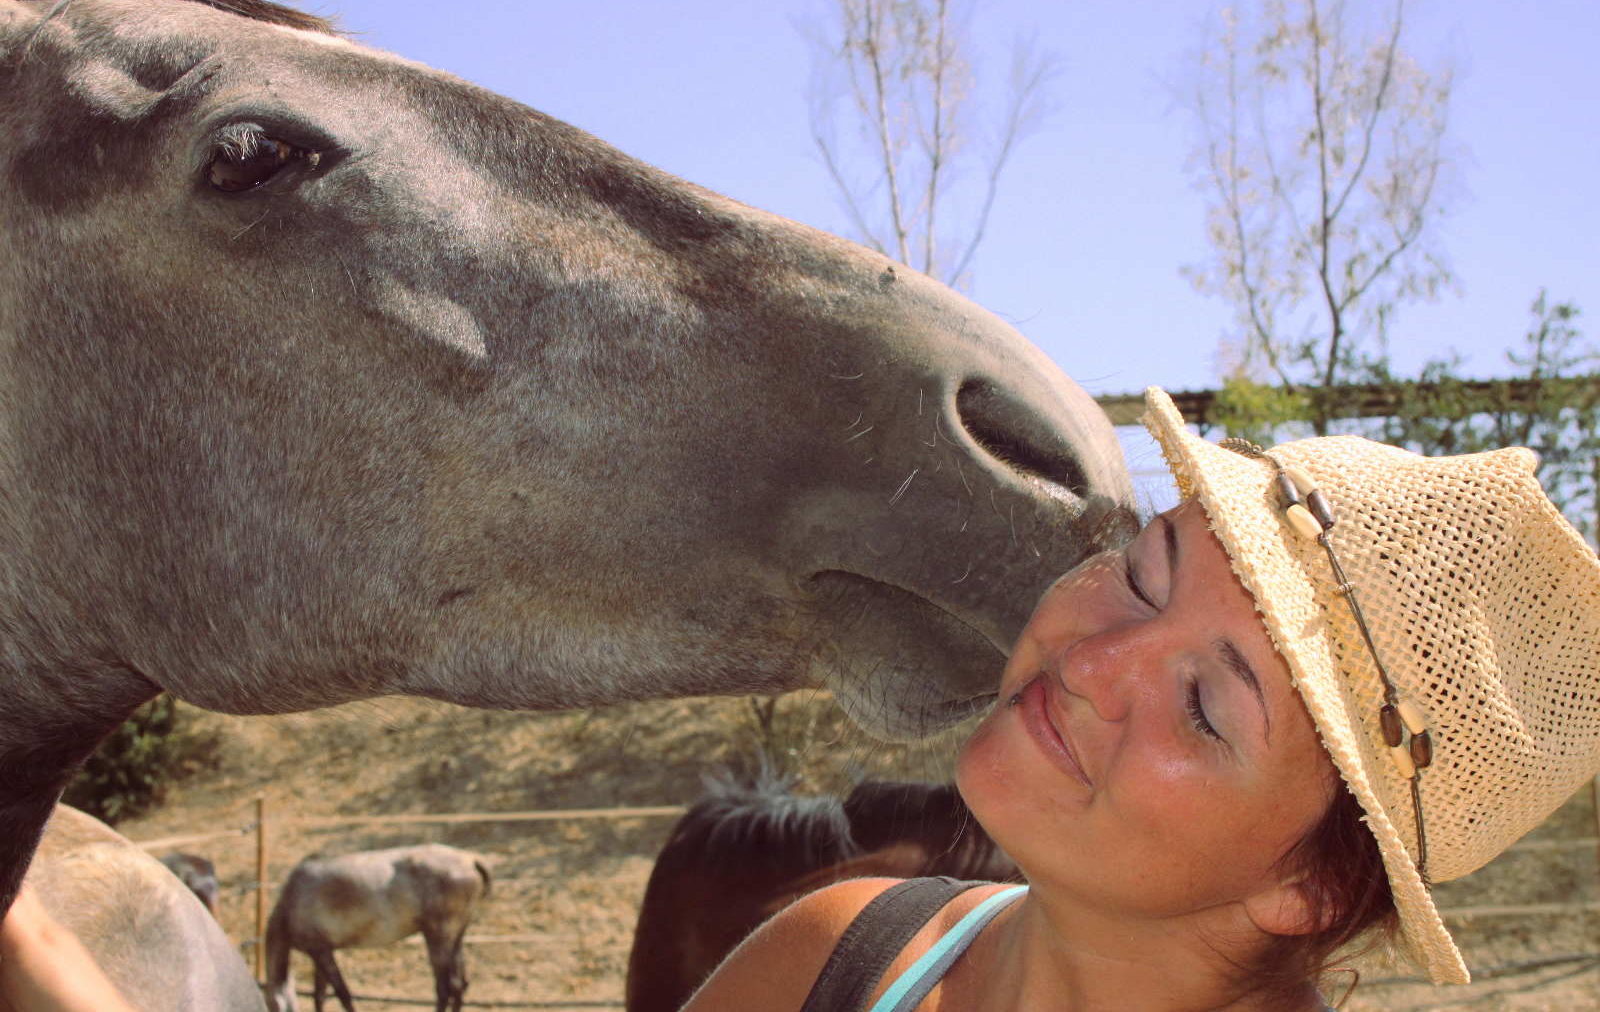 Fohlen gibt Steffi Kuss auf Backe - Freiwilligenarbeit